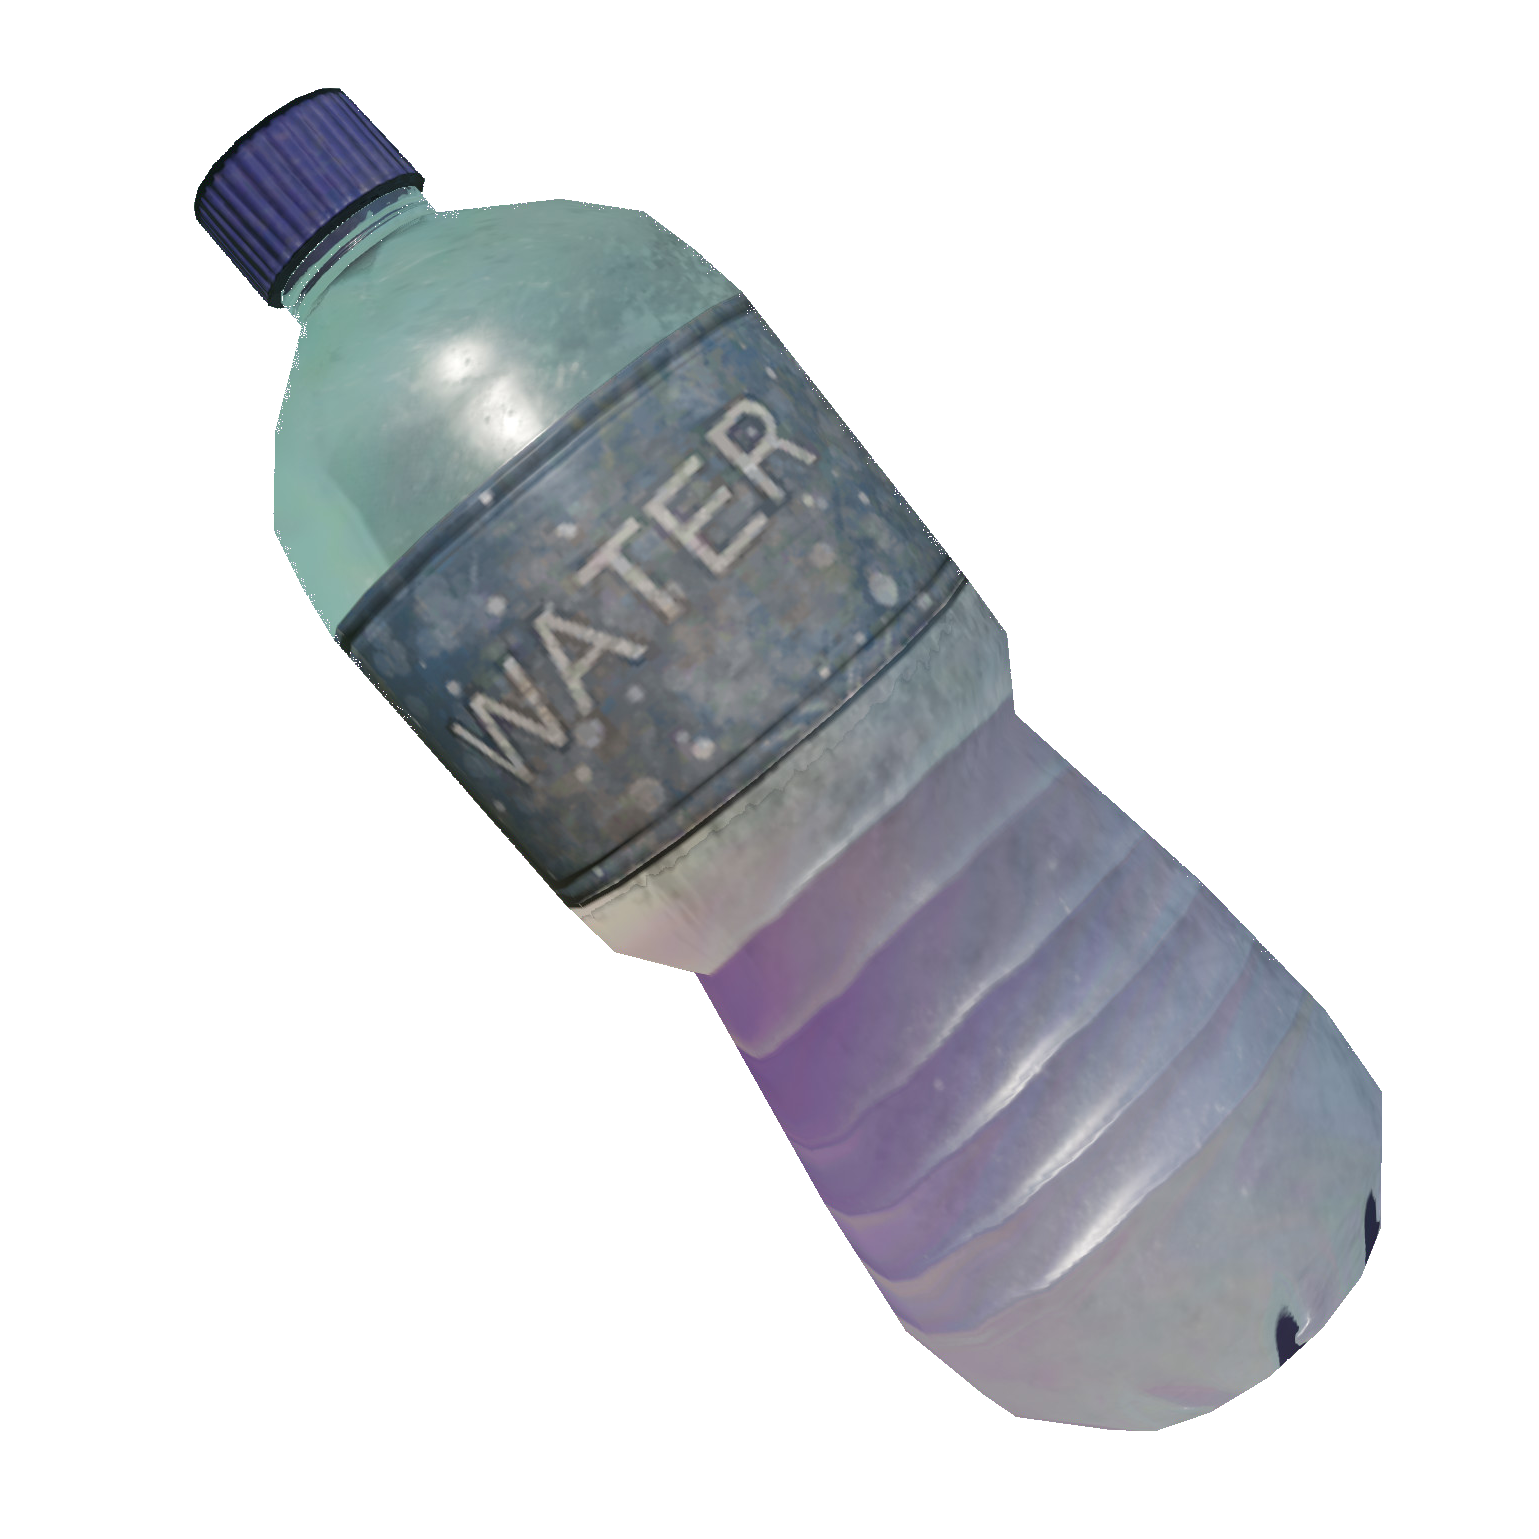 Bottle - Wikipedia